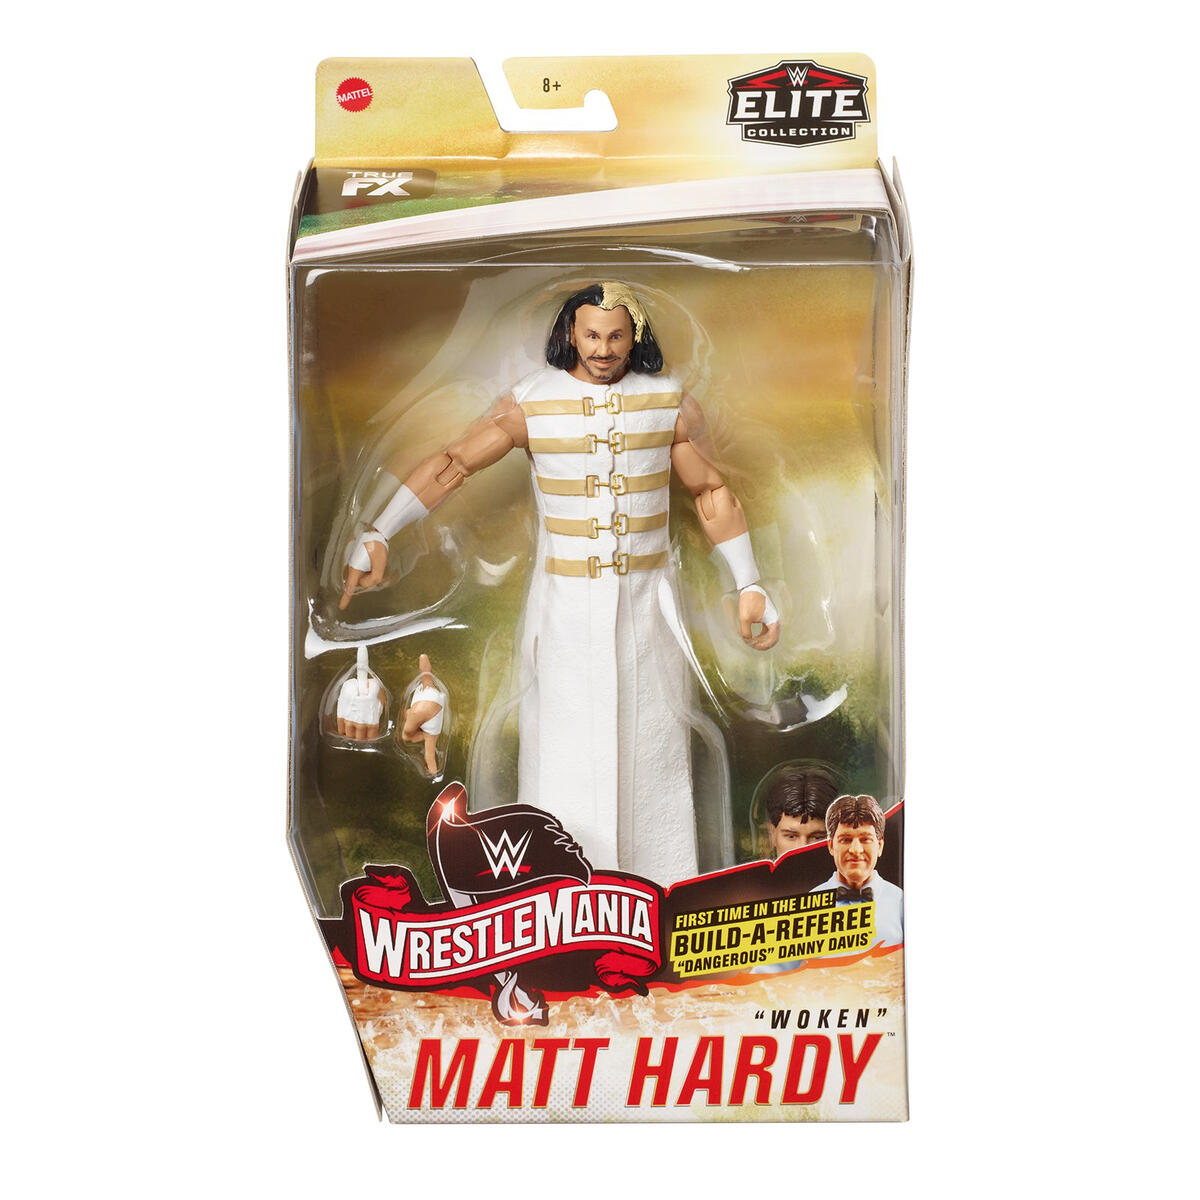 matt hardy wrestling figure